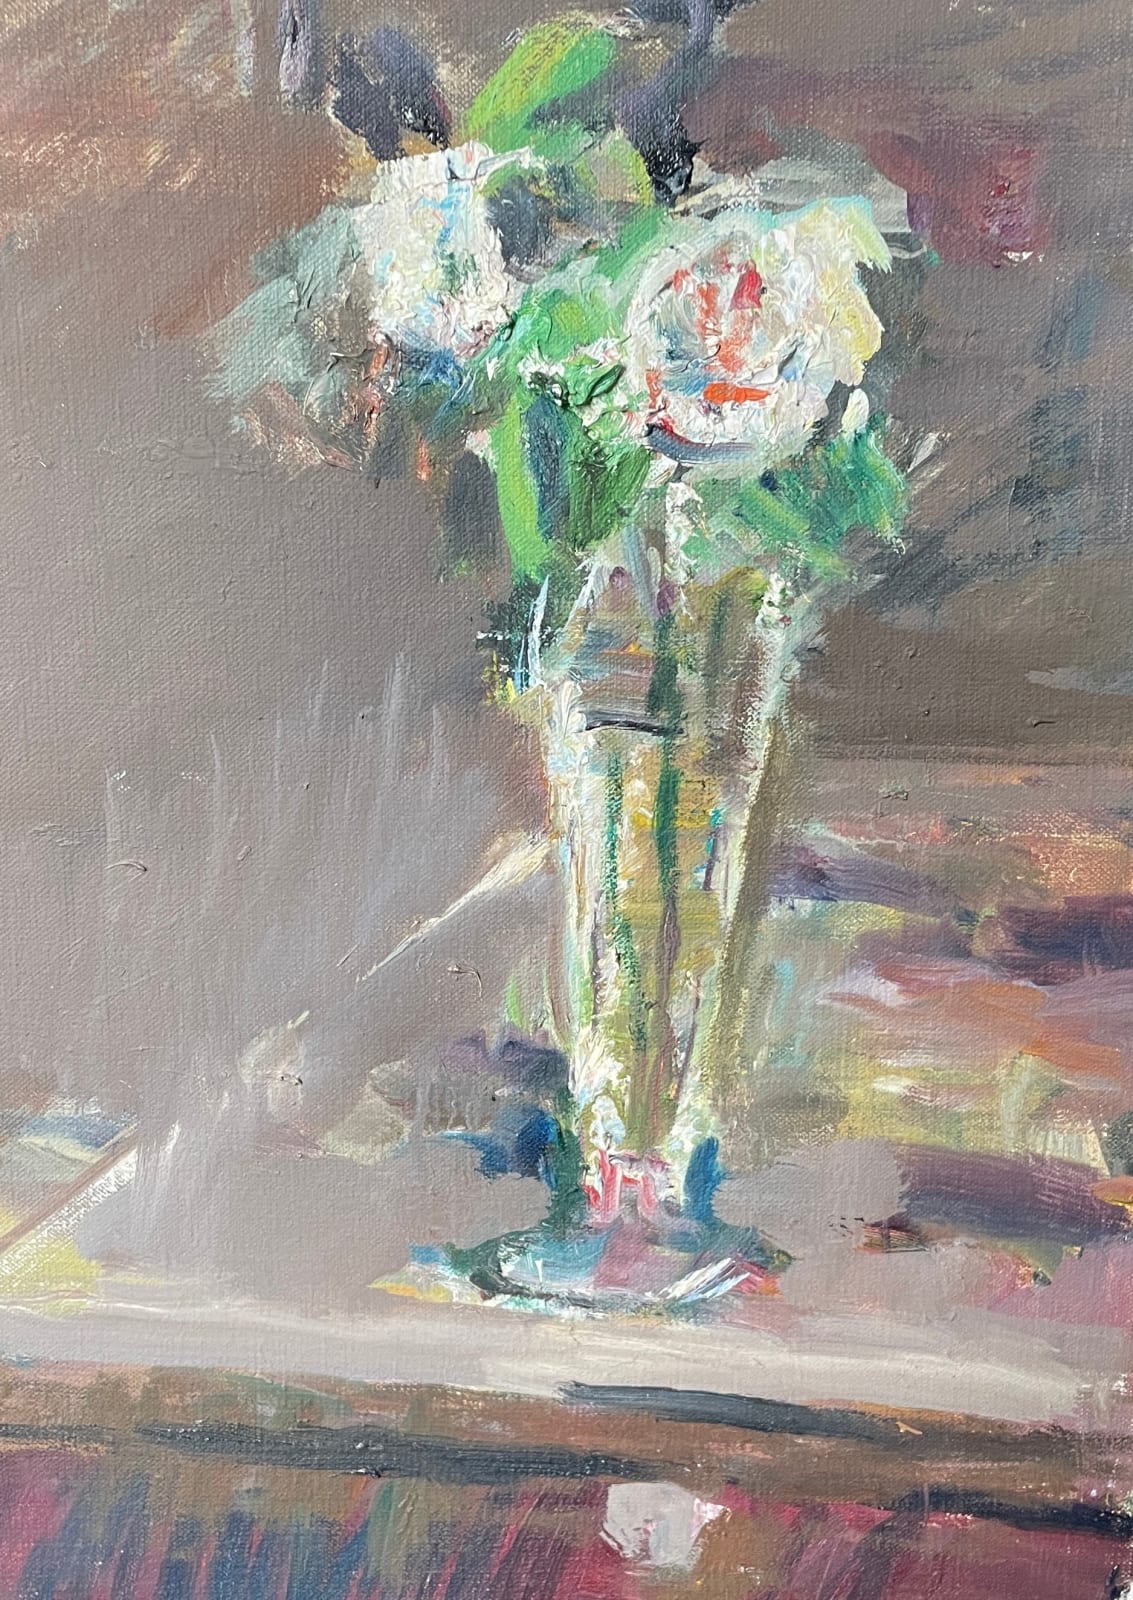 ANTHONY EYTON, White Roses in Vase, 2020